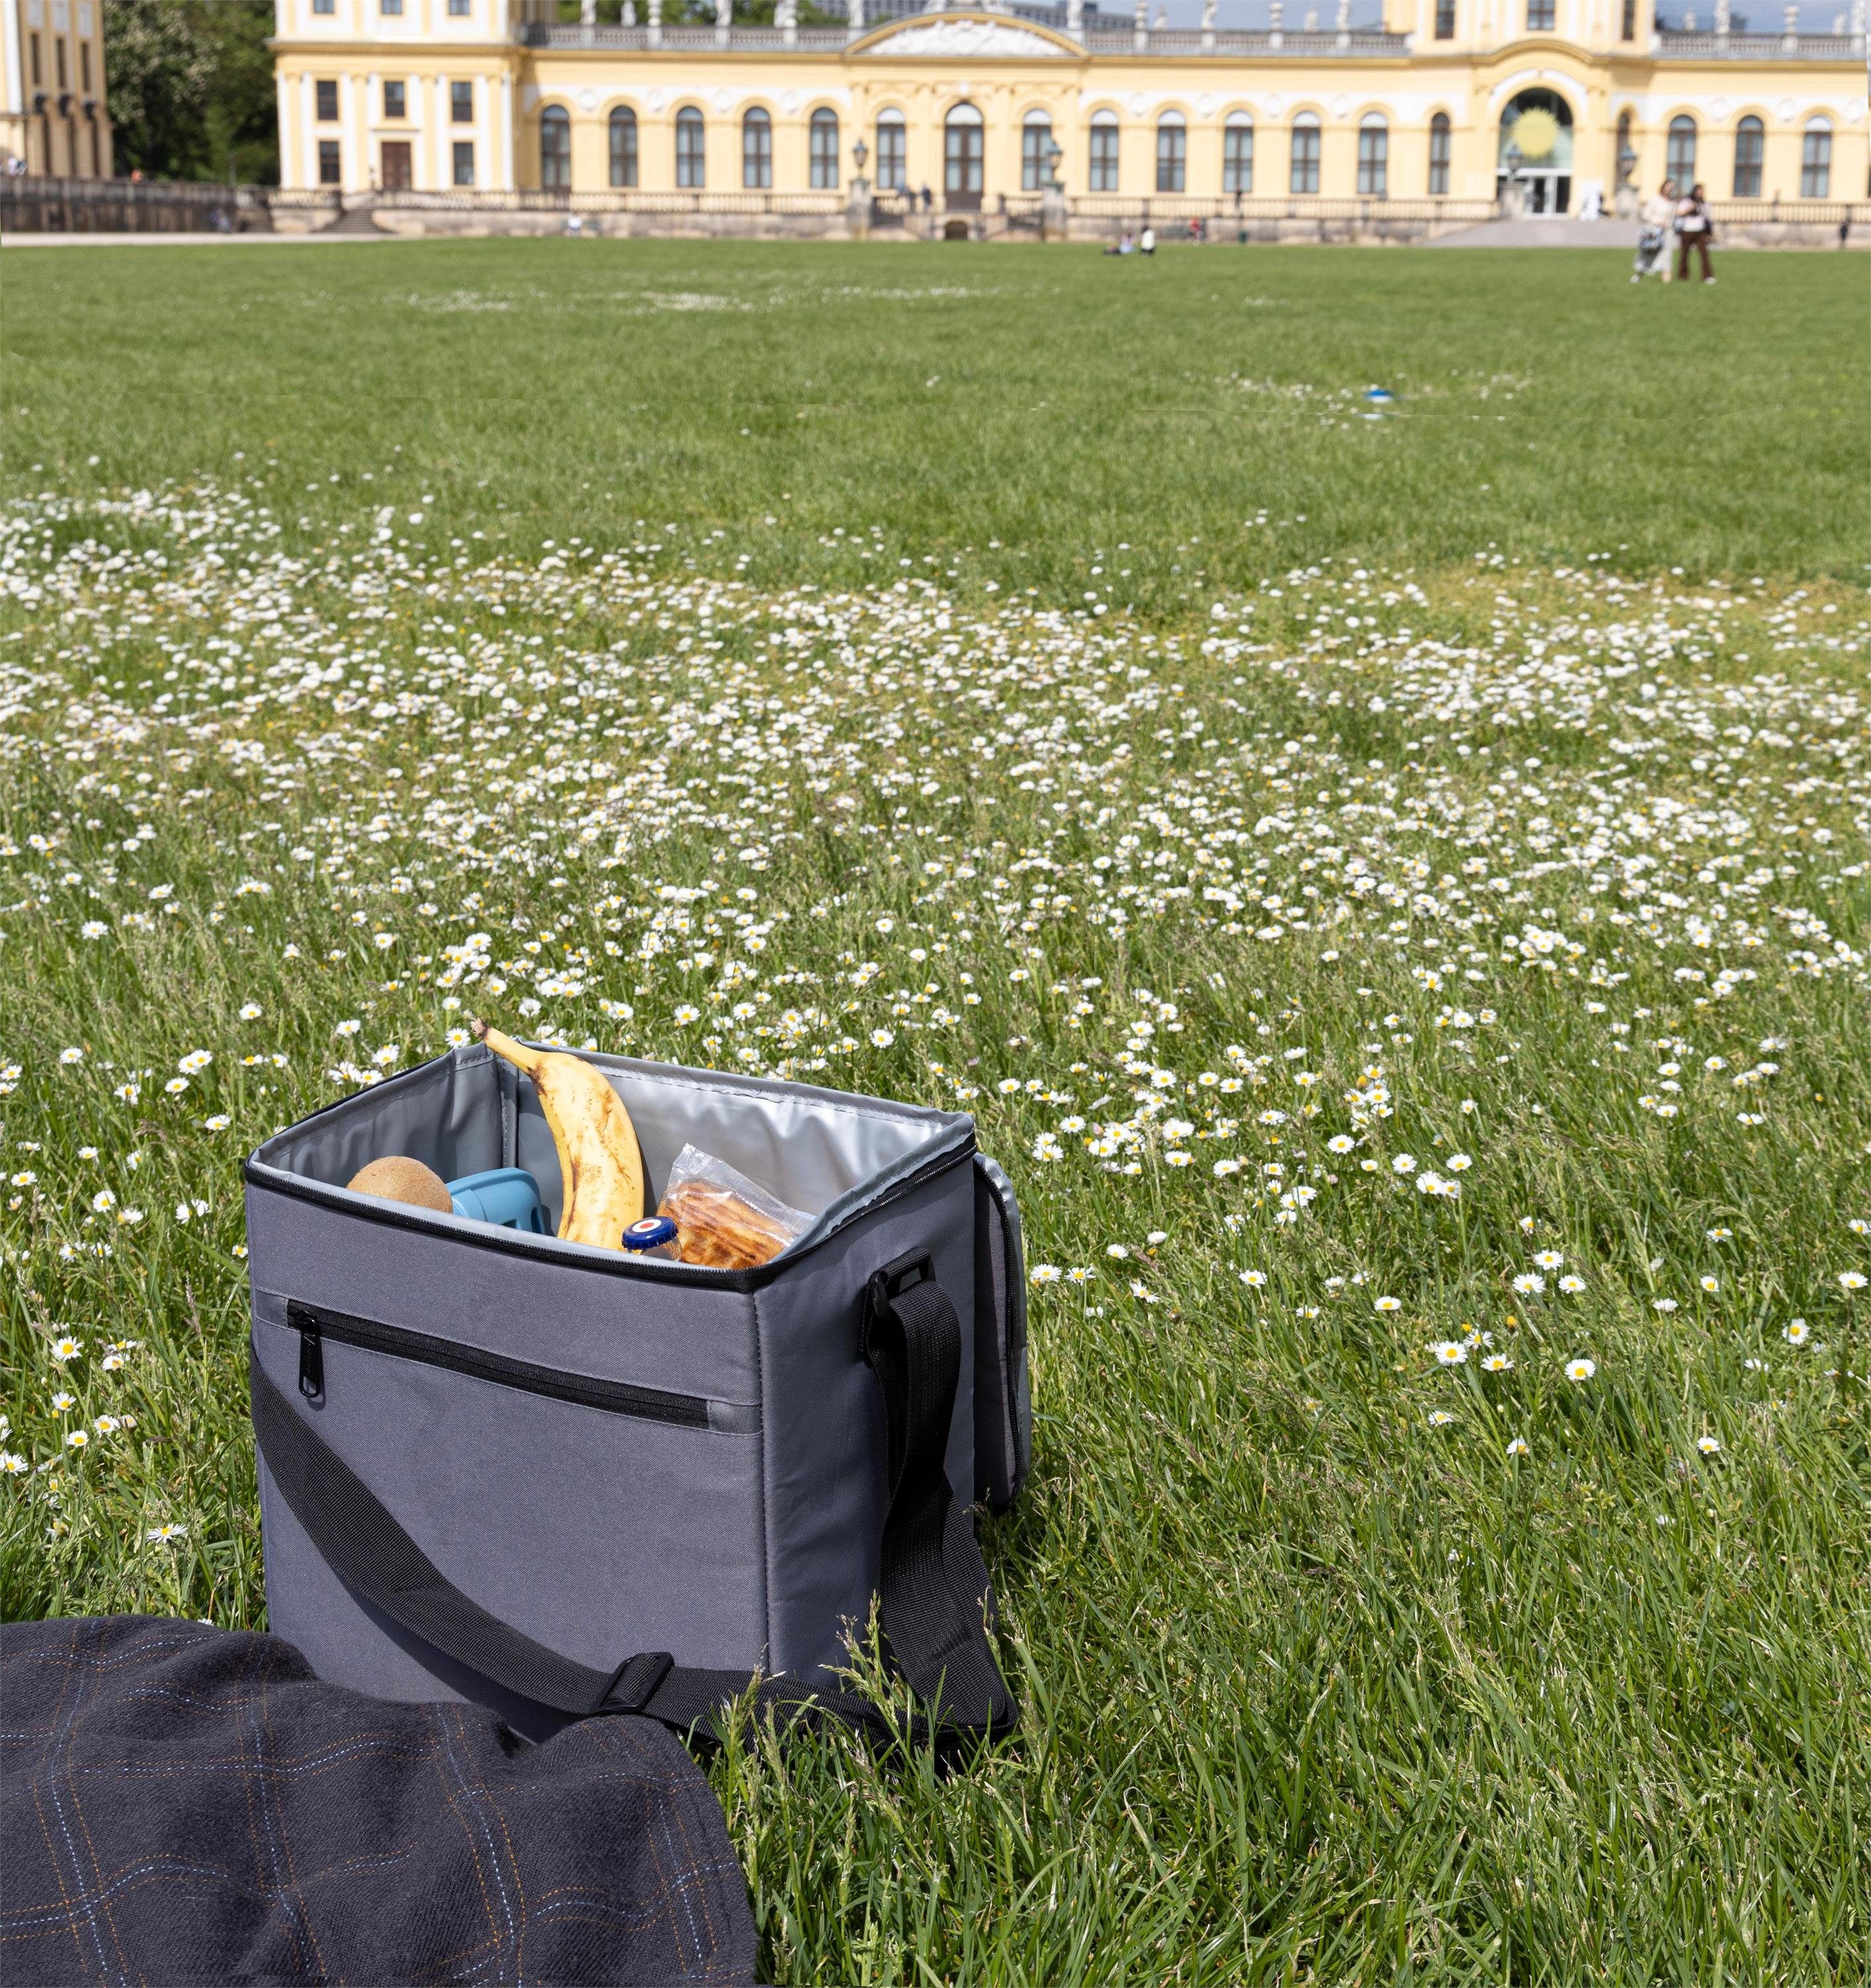 Liter aus Praktische Picknickkorb normani Material Mohe, Picknicktasche recyceltem 17 Kühltasche